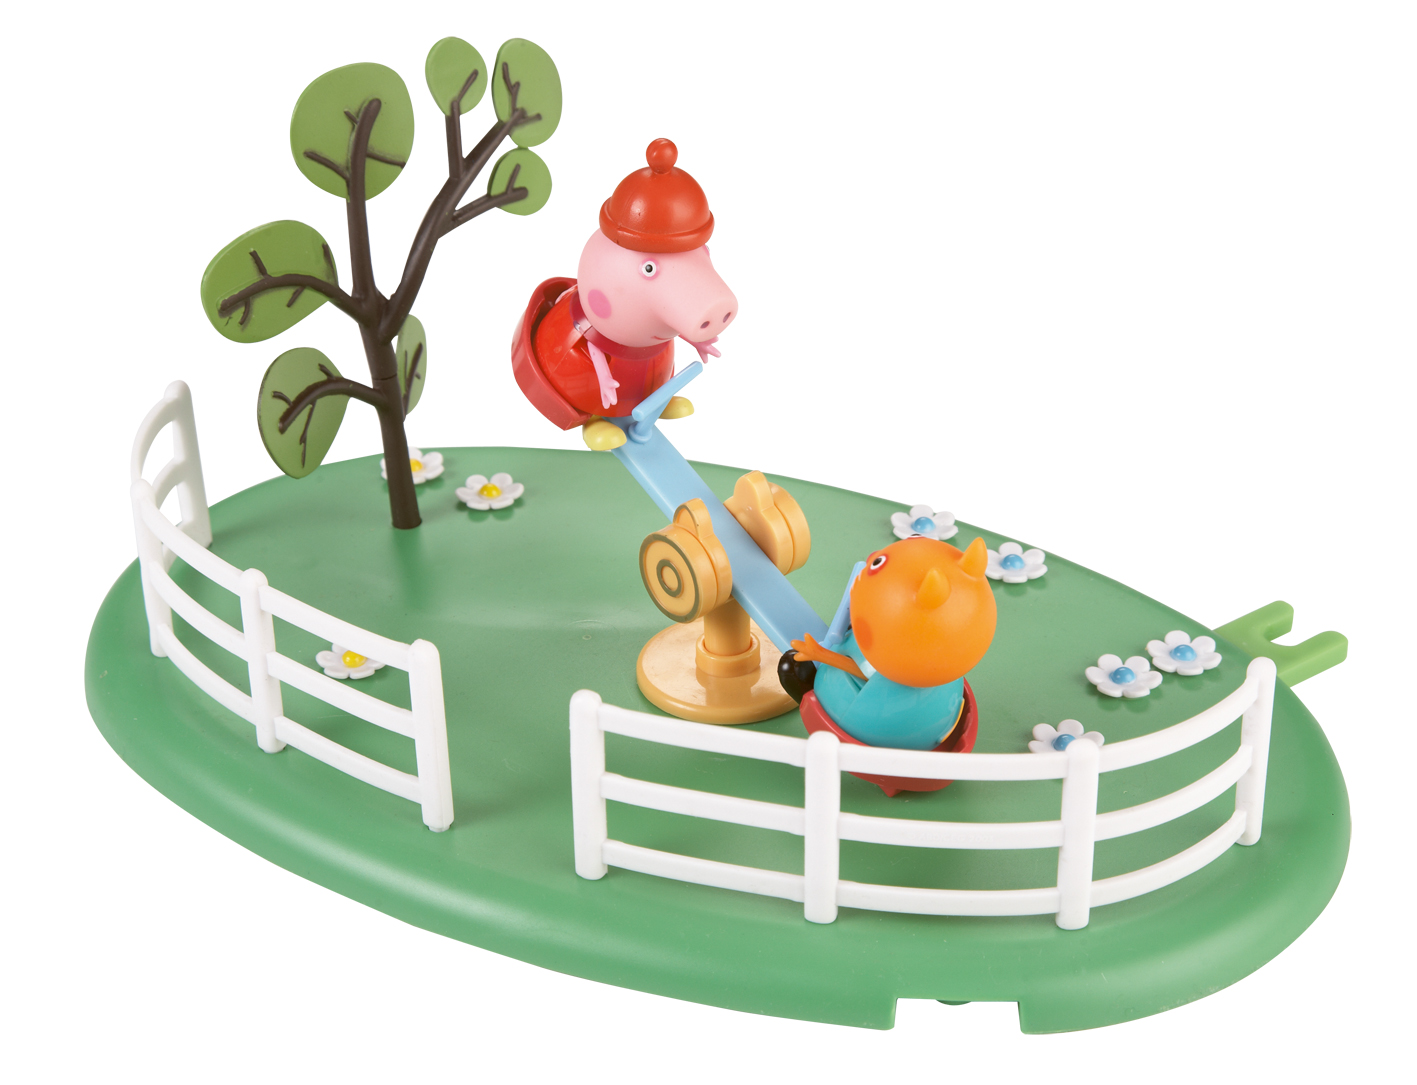 Peppa Pig Peppa - Playtime Fun Playsets - Seesaw